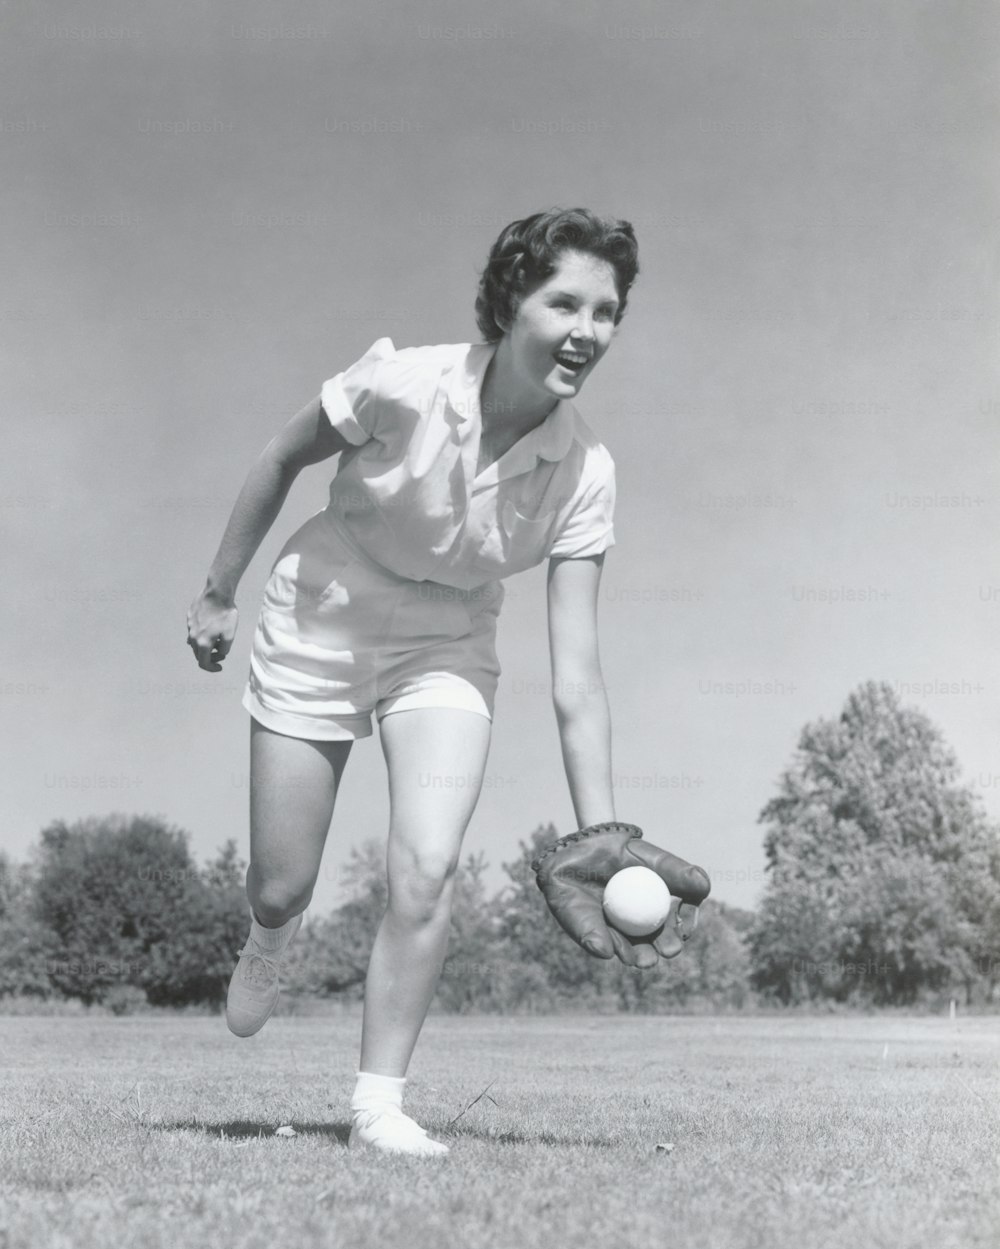 ESTADOS UNIDOS - CIRCA 1950s: Mujer joven atrapando béisbol en guante.